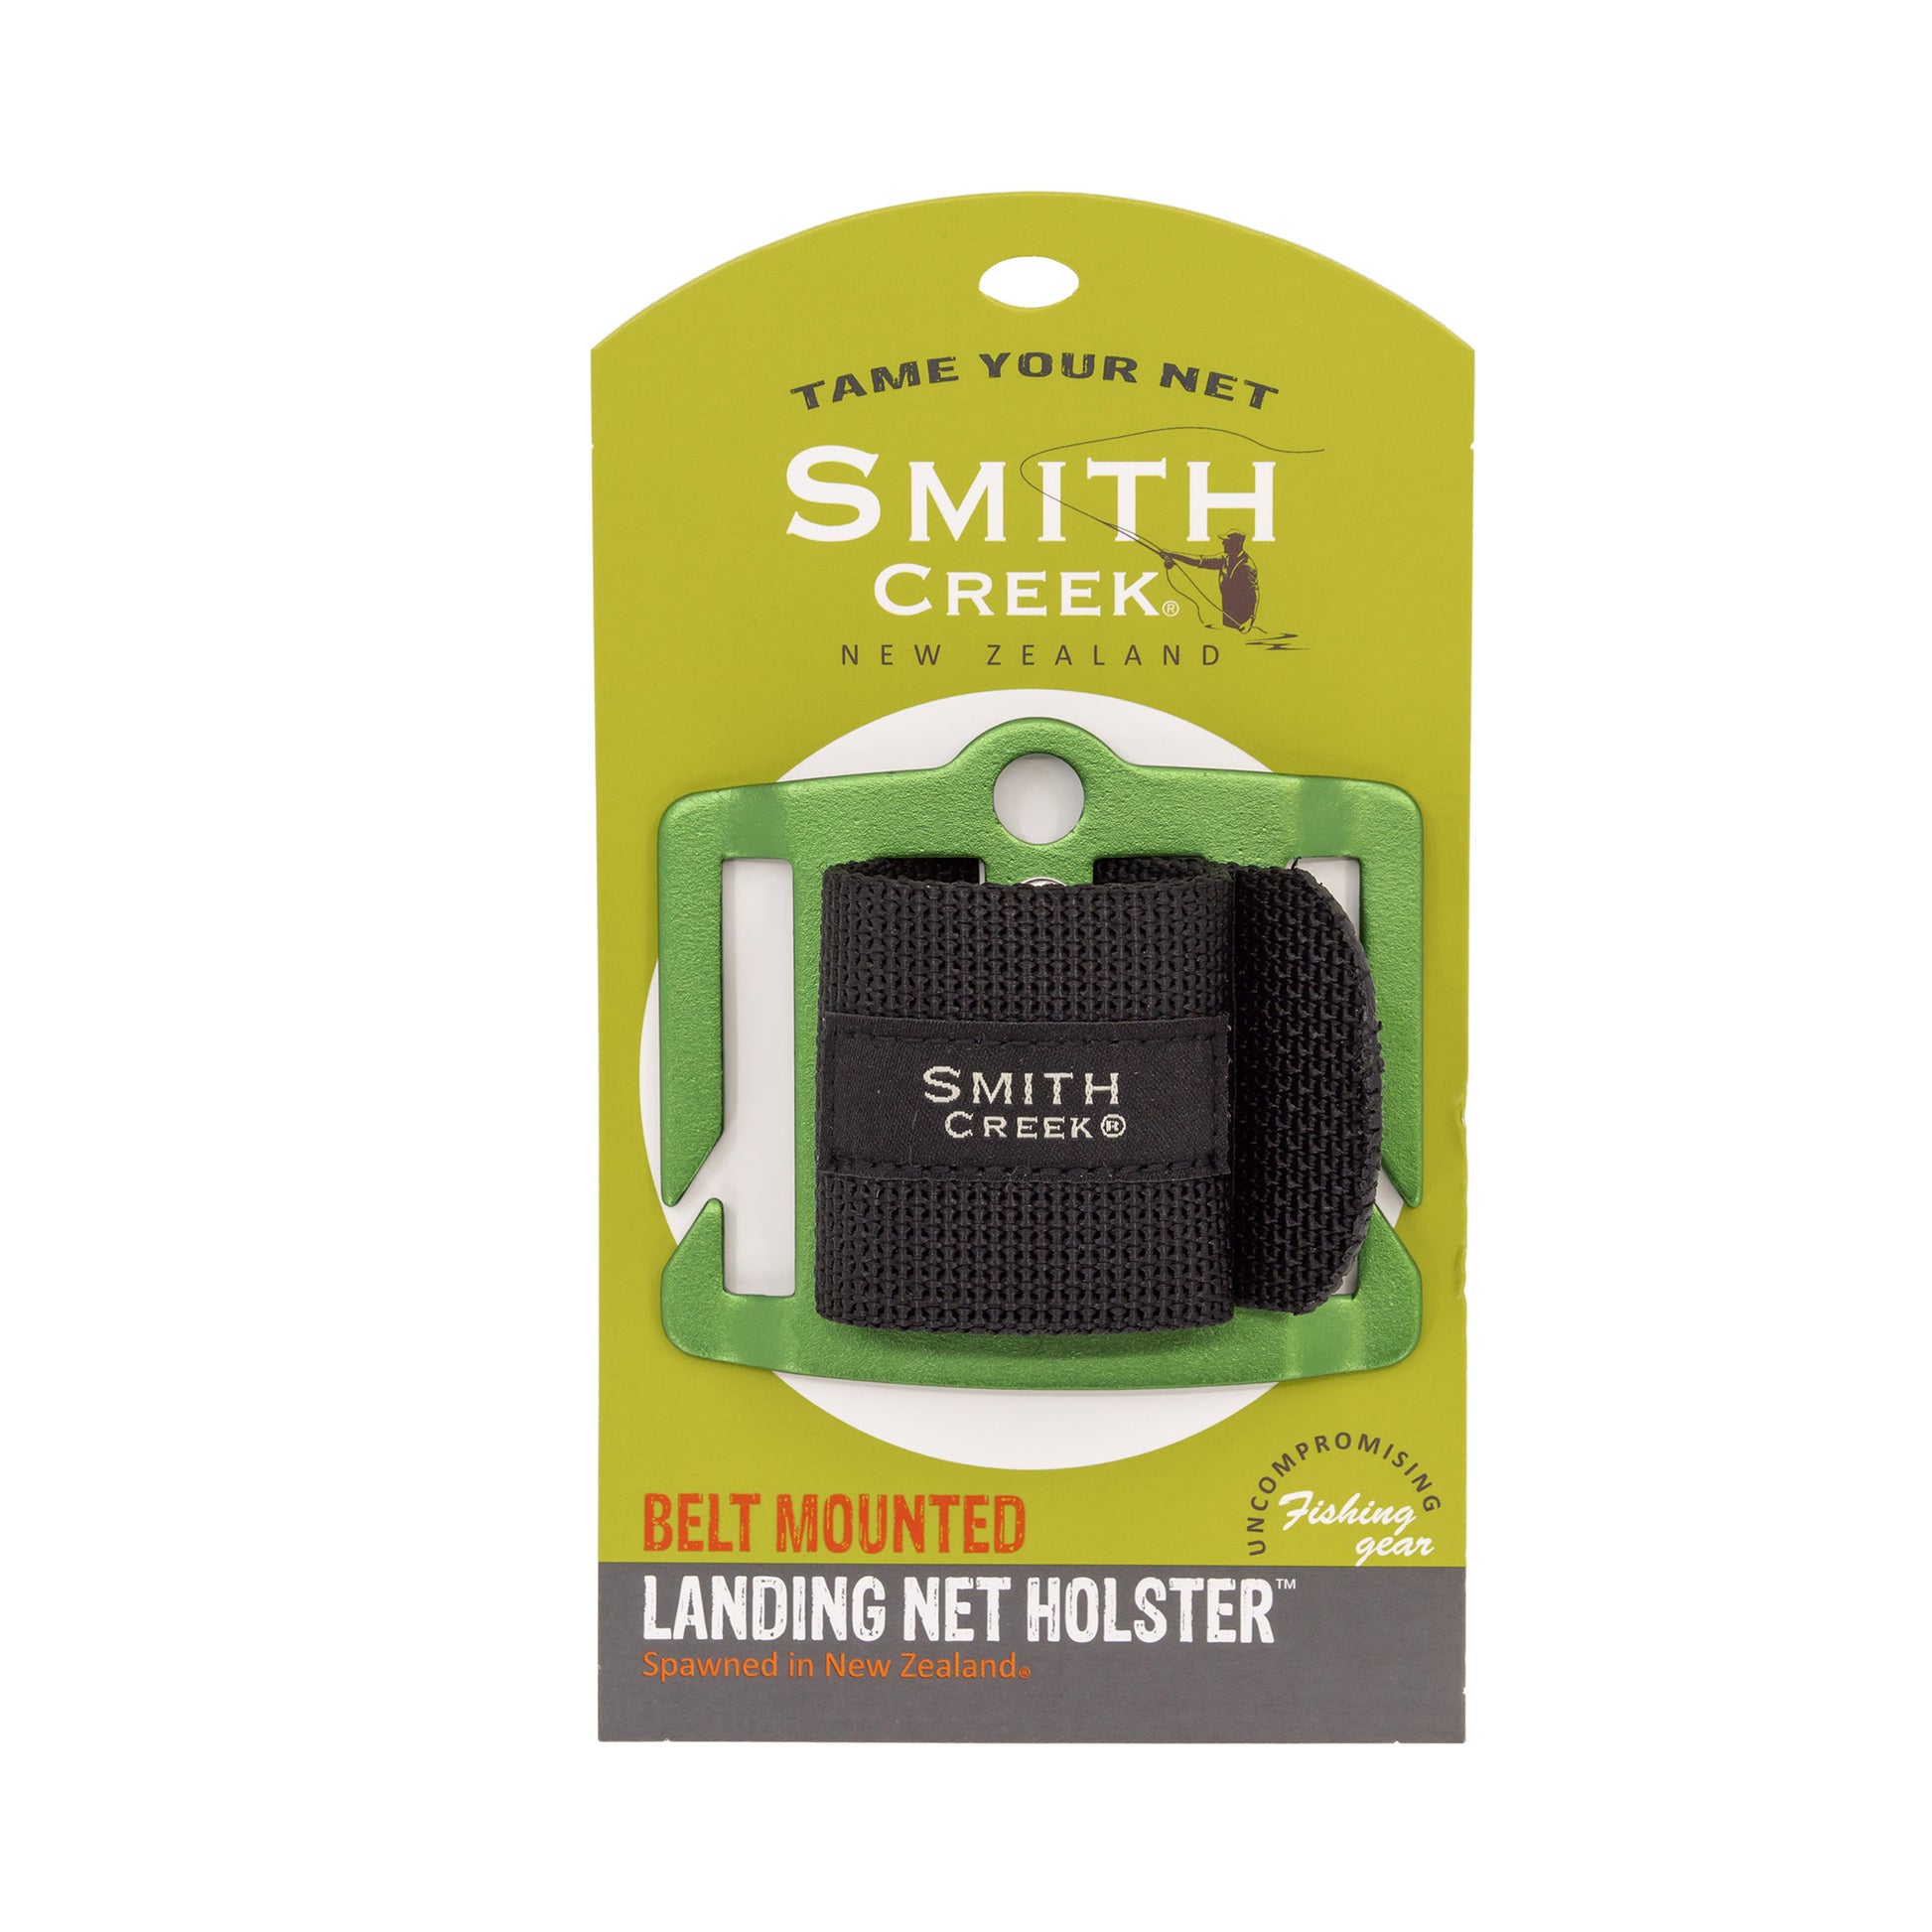 Smith Creek Net Holster - Fly Fishing Net Holder 